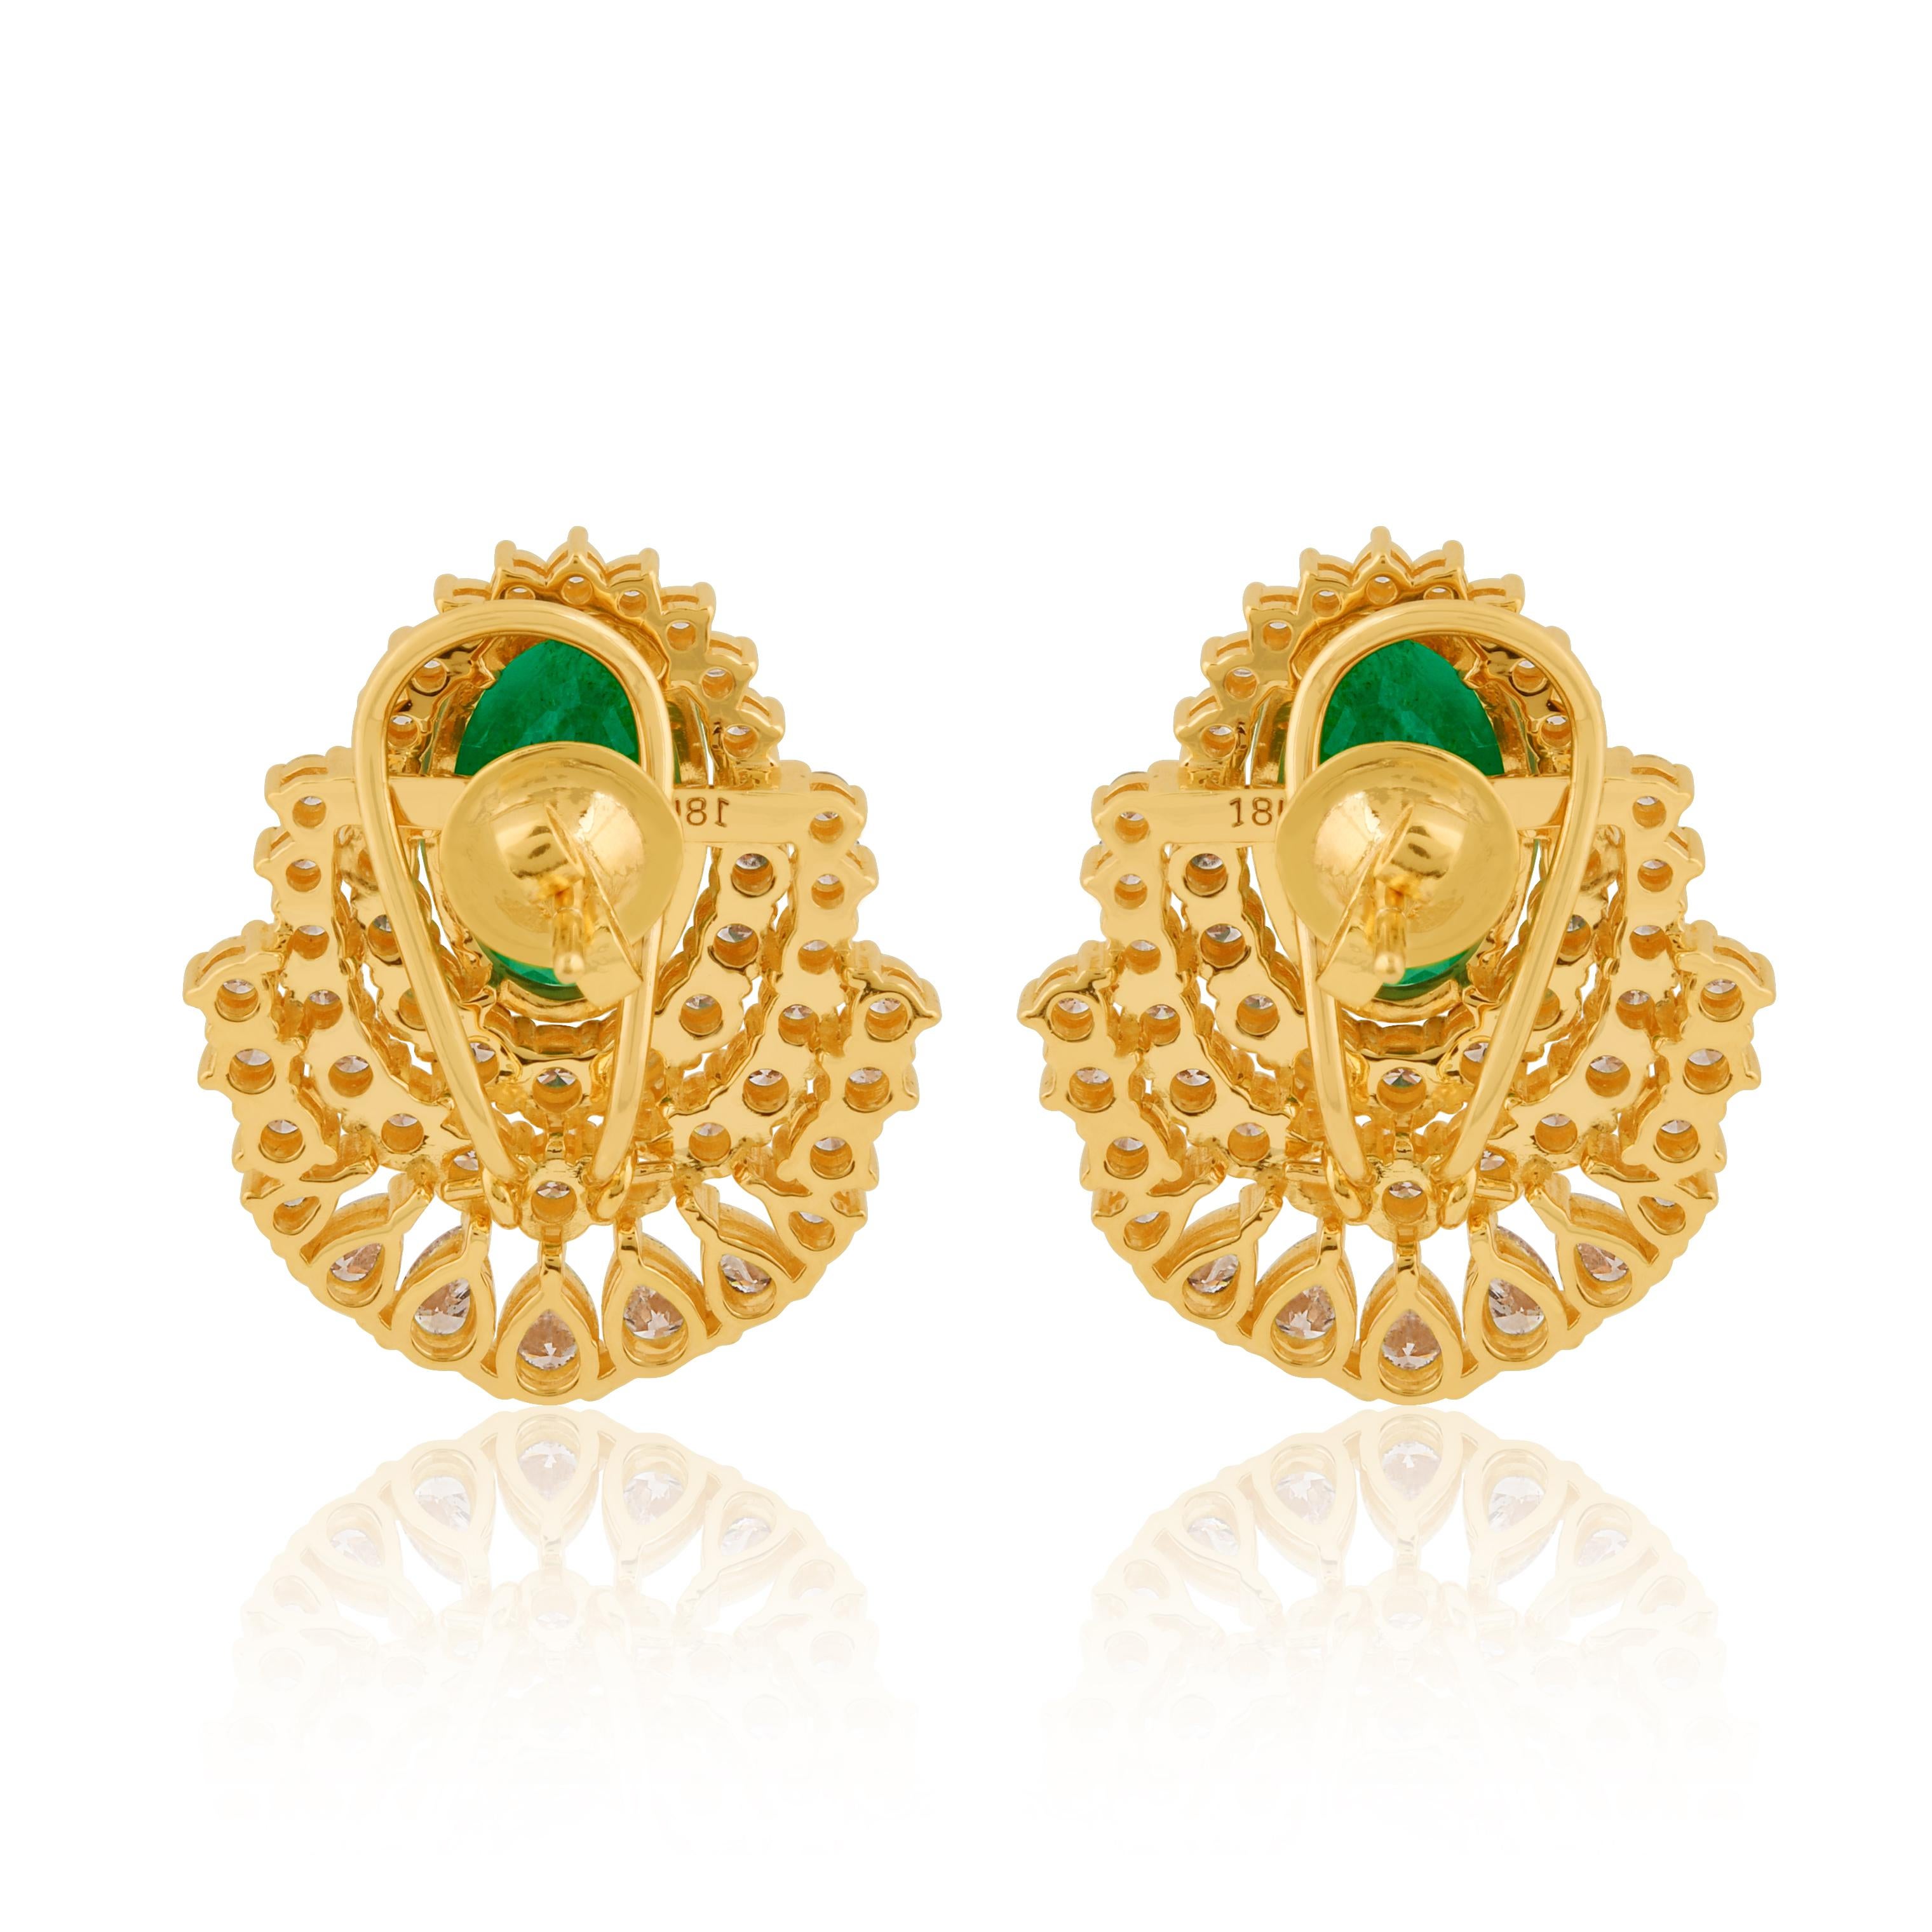 Oval Zambian Emerald Gemstone Earrings Pear Diamond 14k Yellow Gold Fine Jewelry For Sale 1